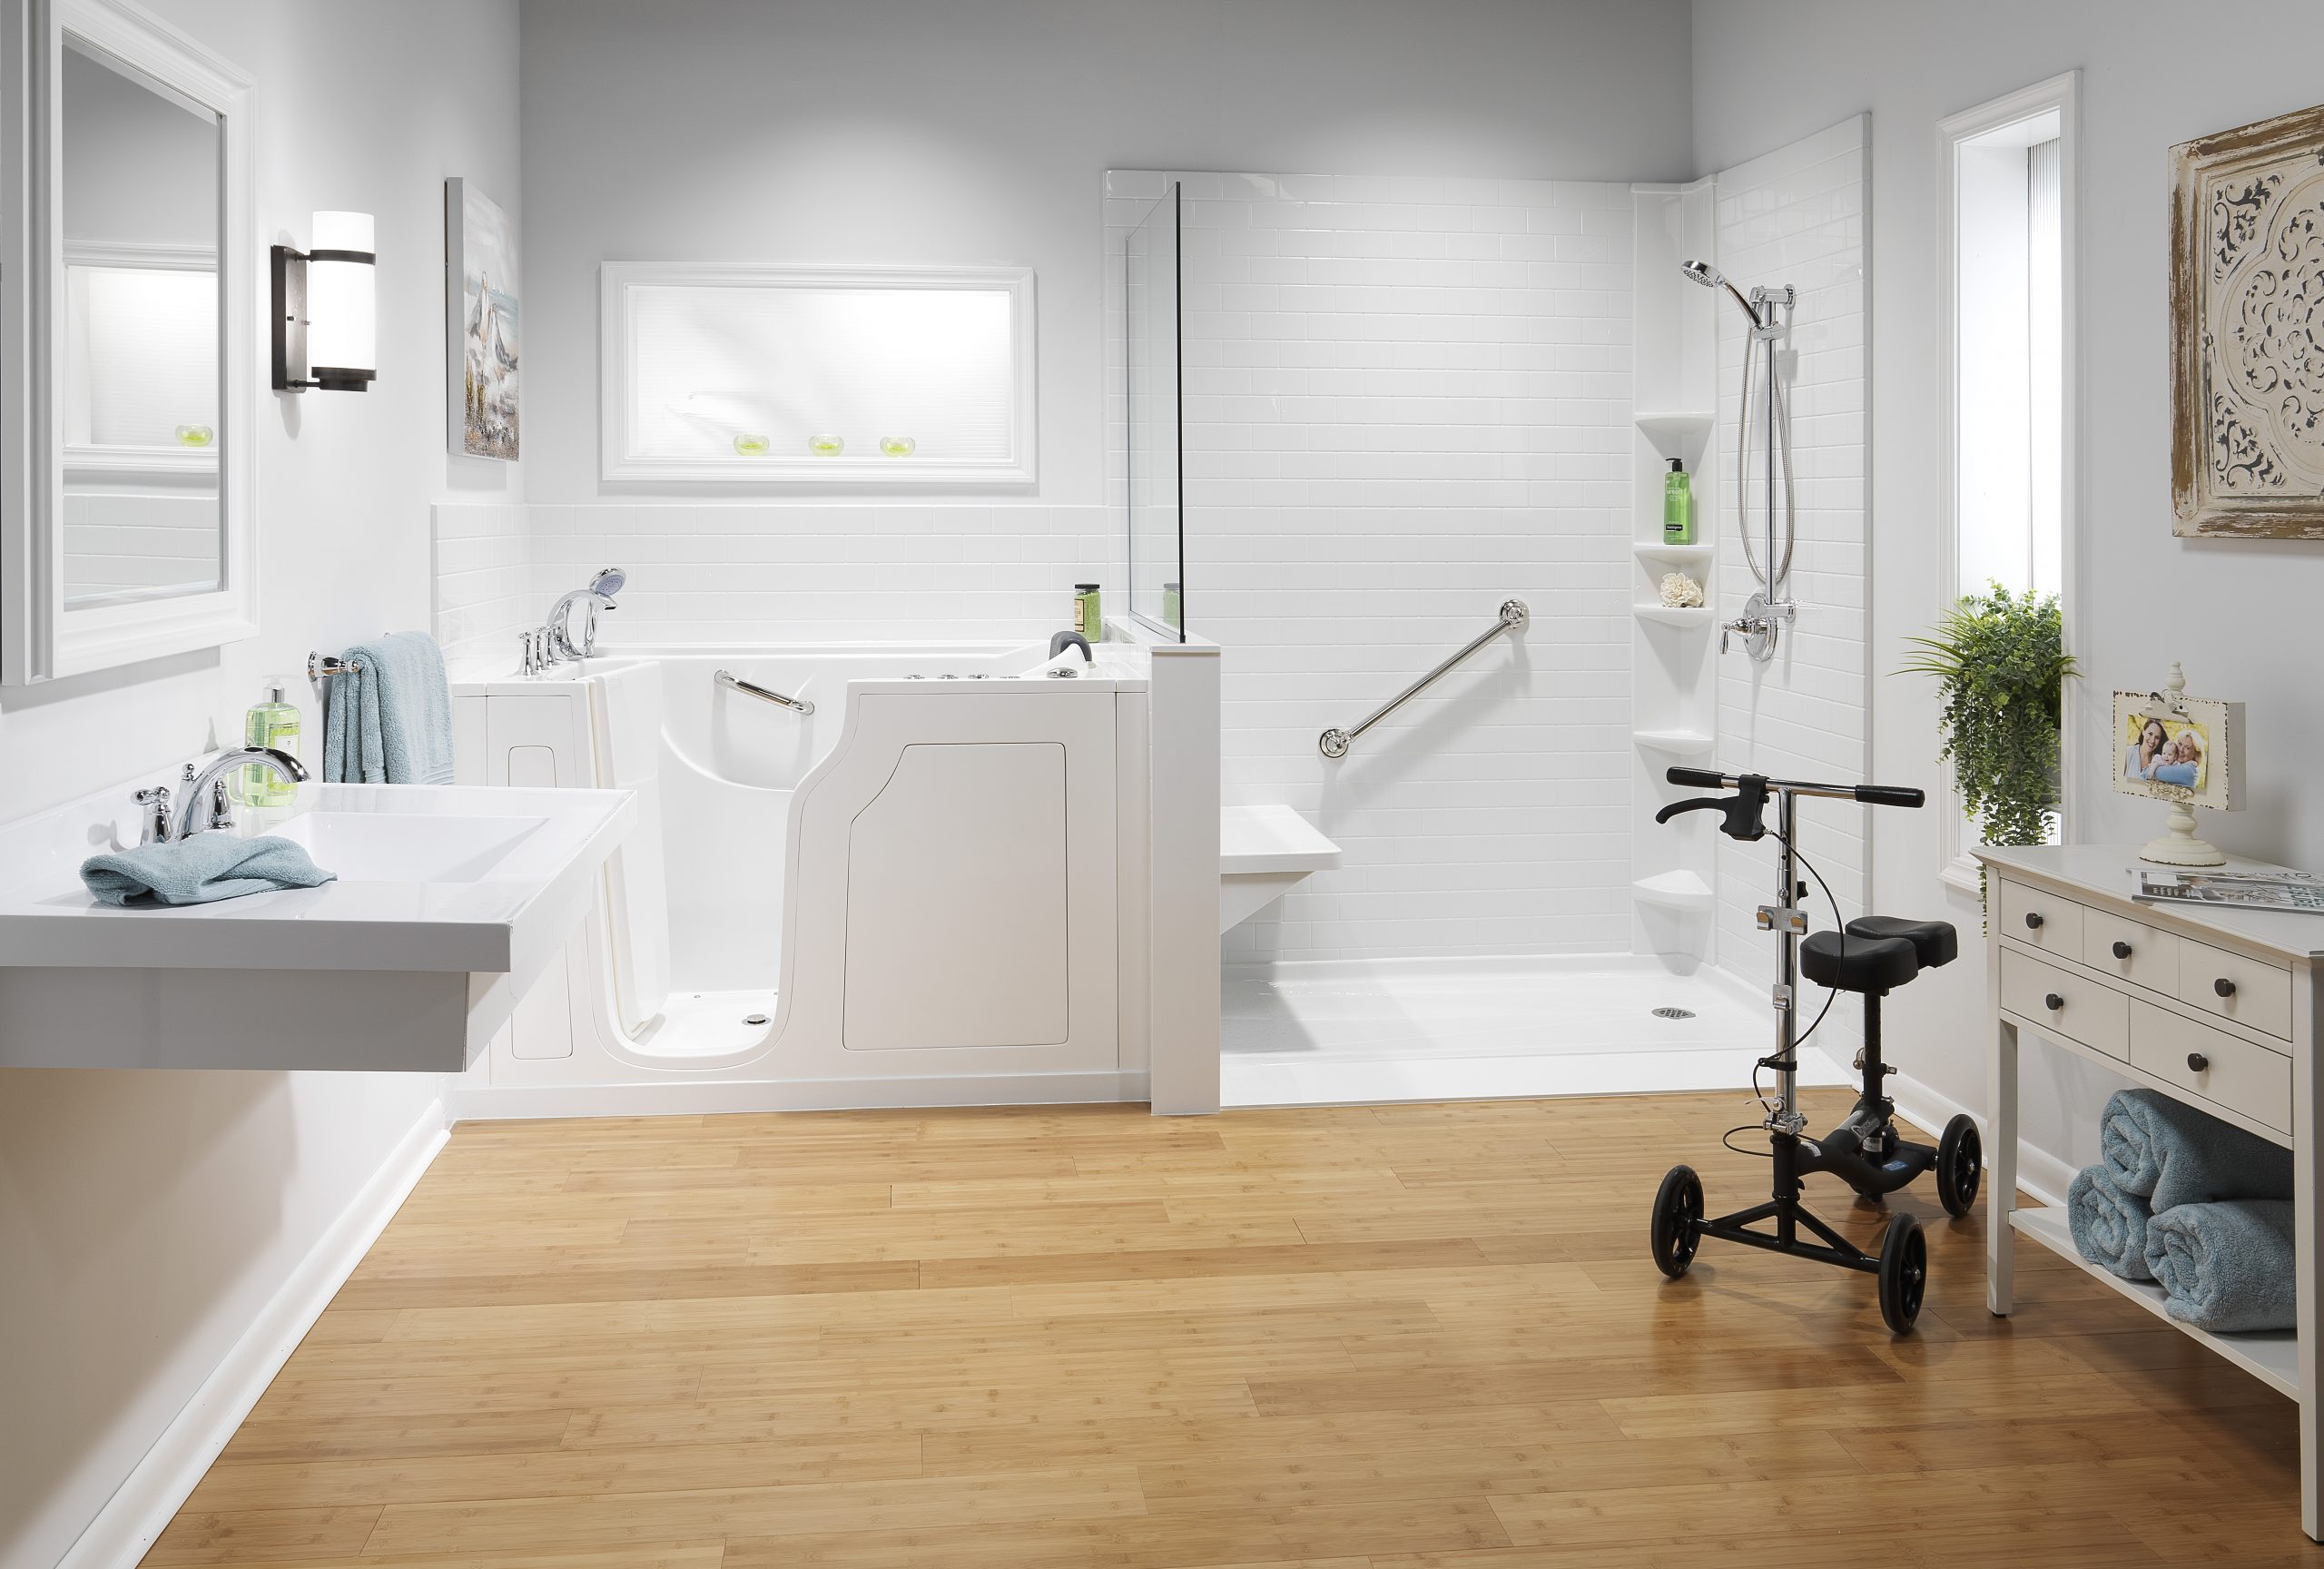 ADA Bathroom Products at Modern Bath Systems